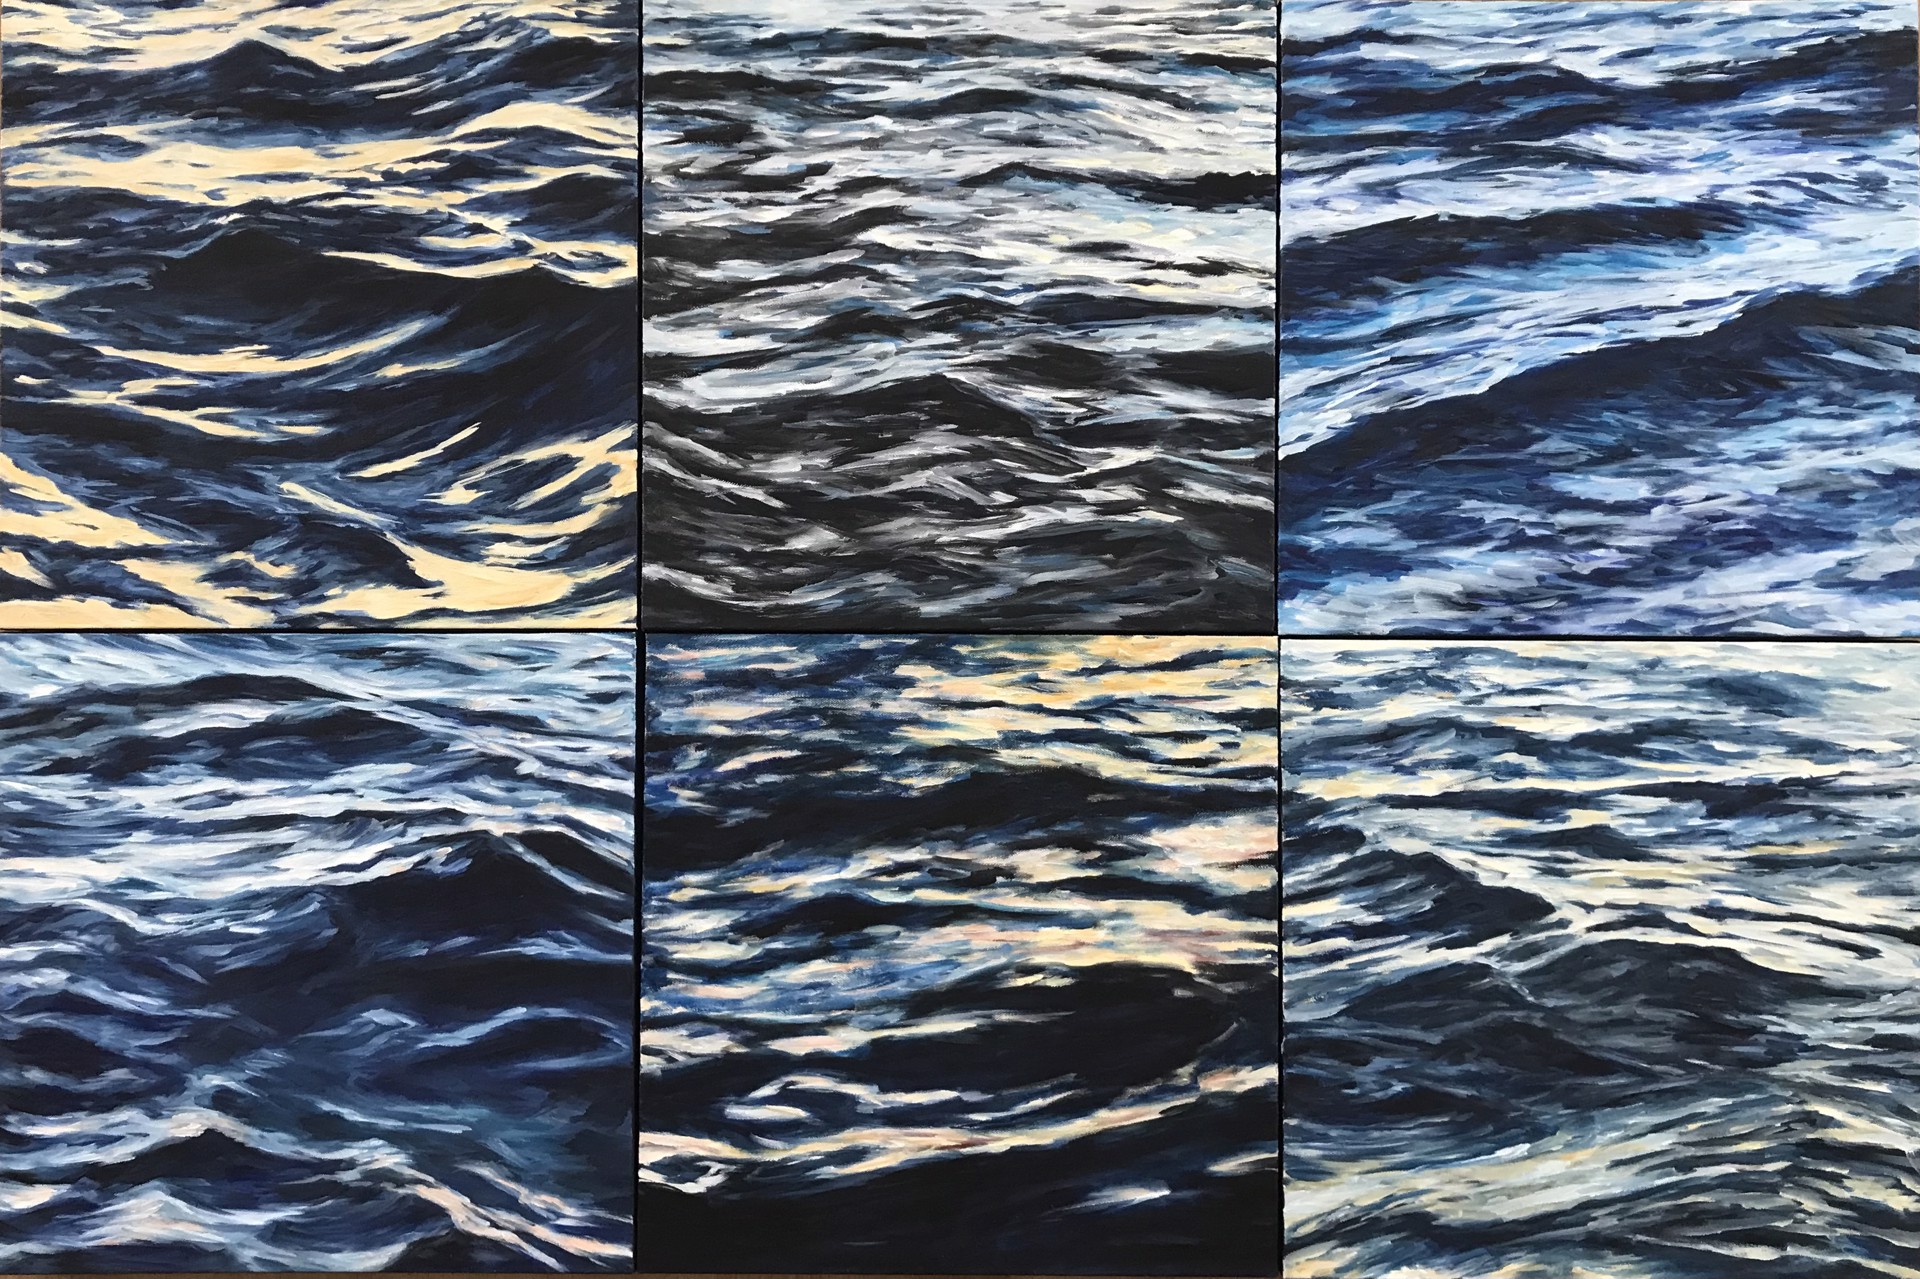 Lahaina Waves 5 by Valerie Eickmeier